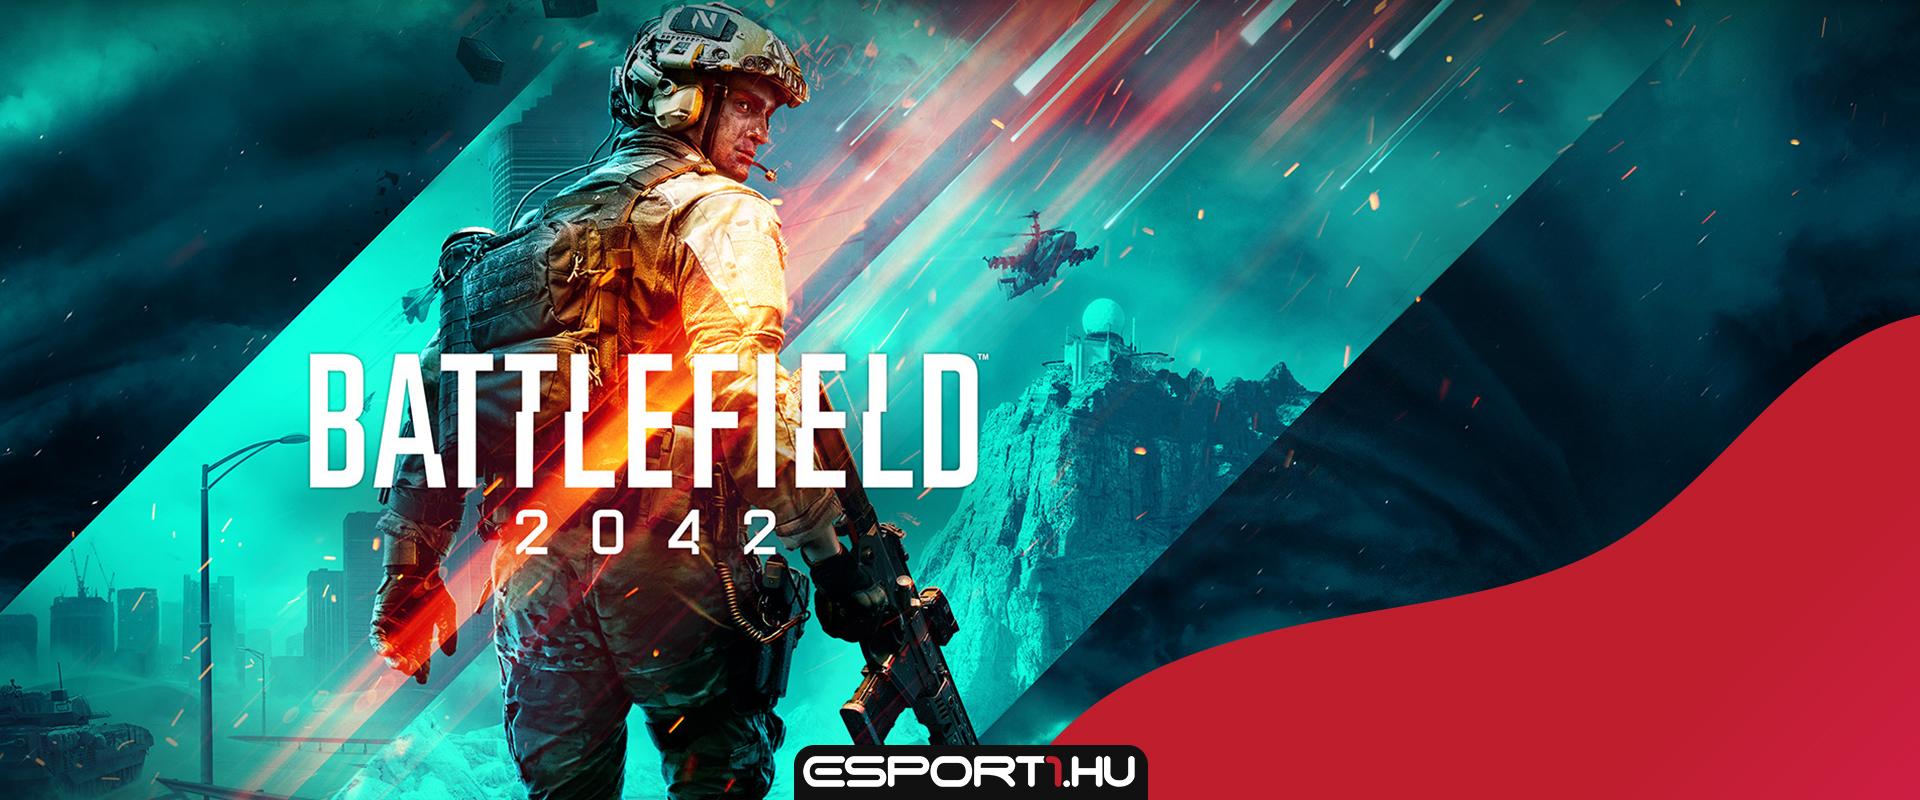 Battlefield 2042: Megjelenési dátum, pályák, játékmódok és minden infó egy helyen